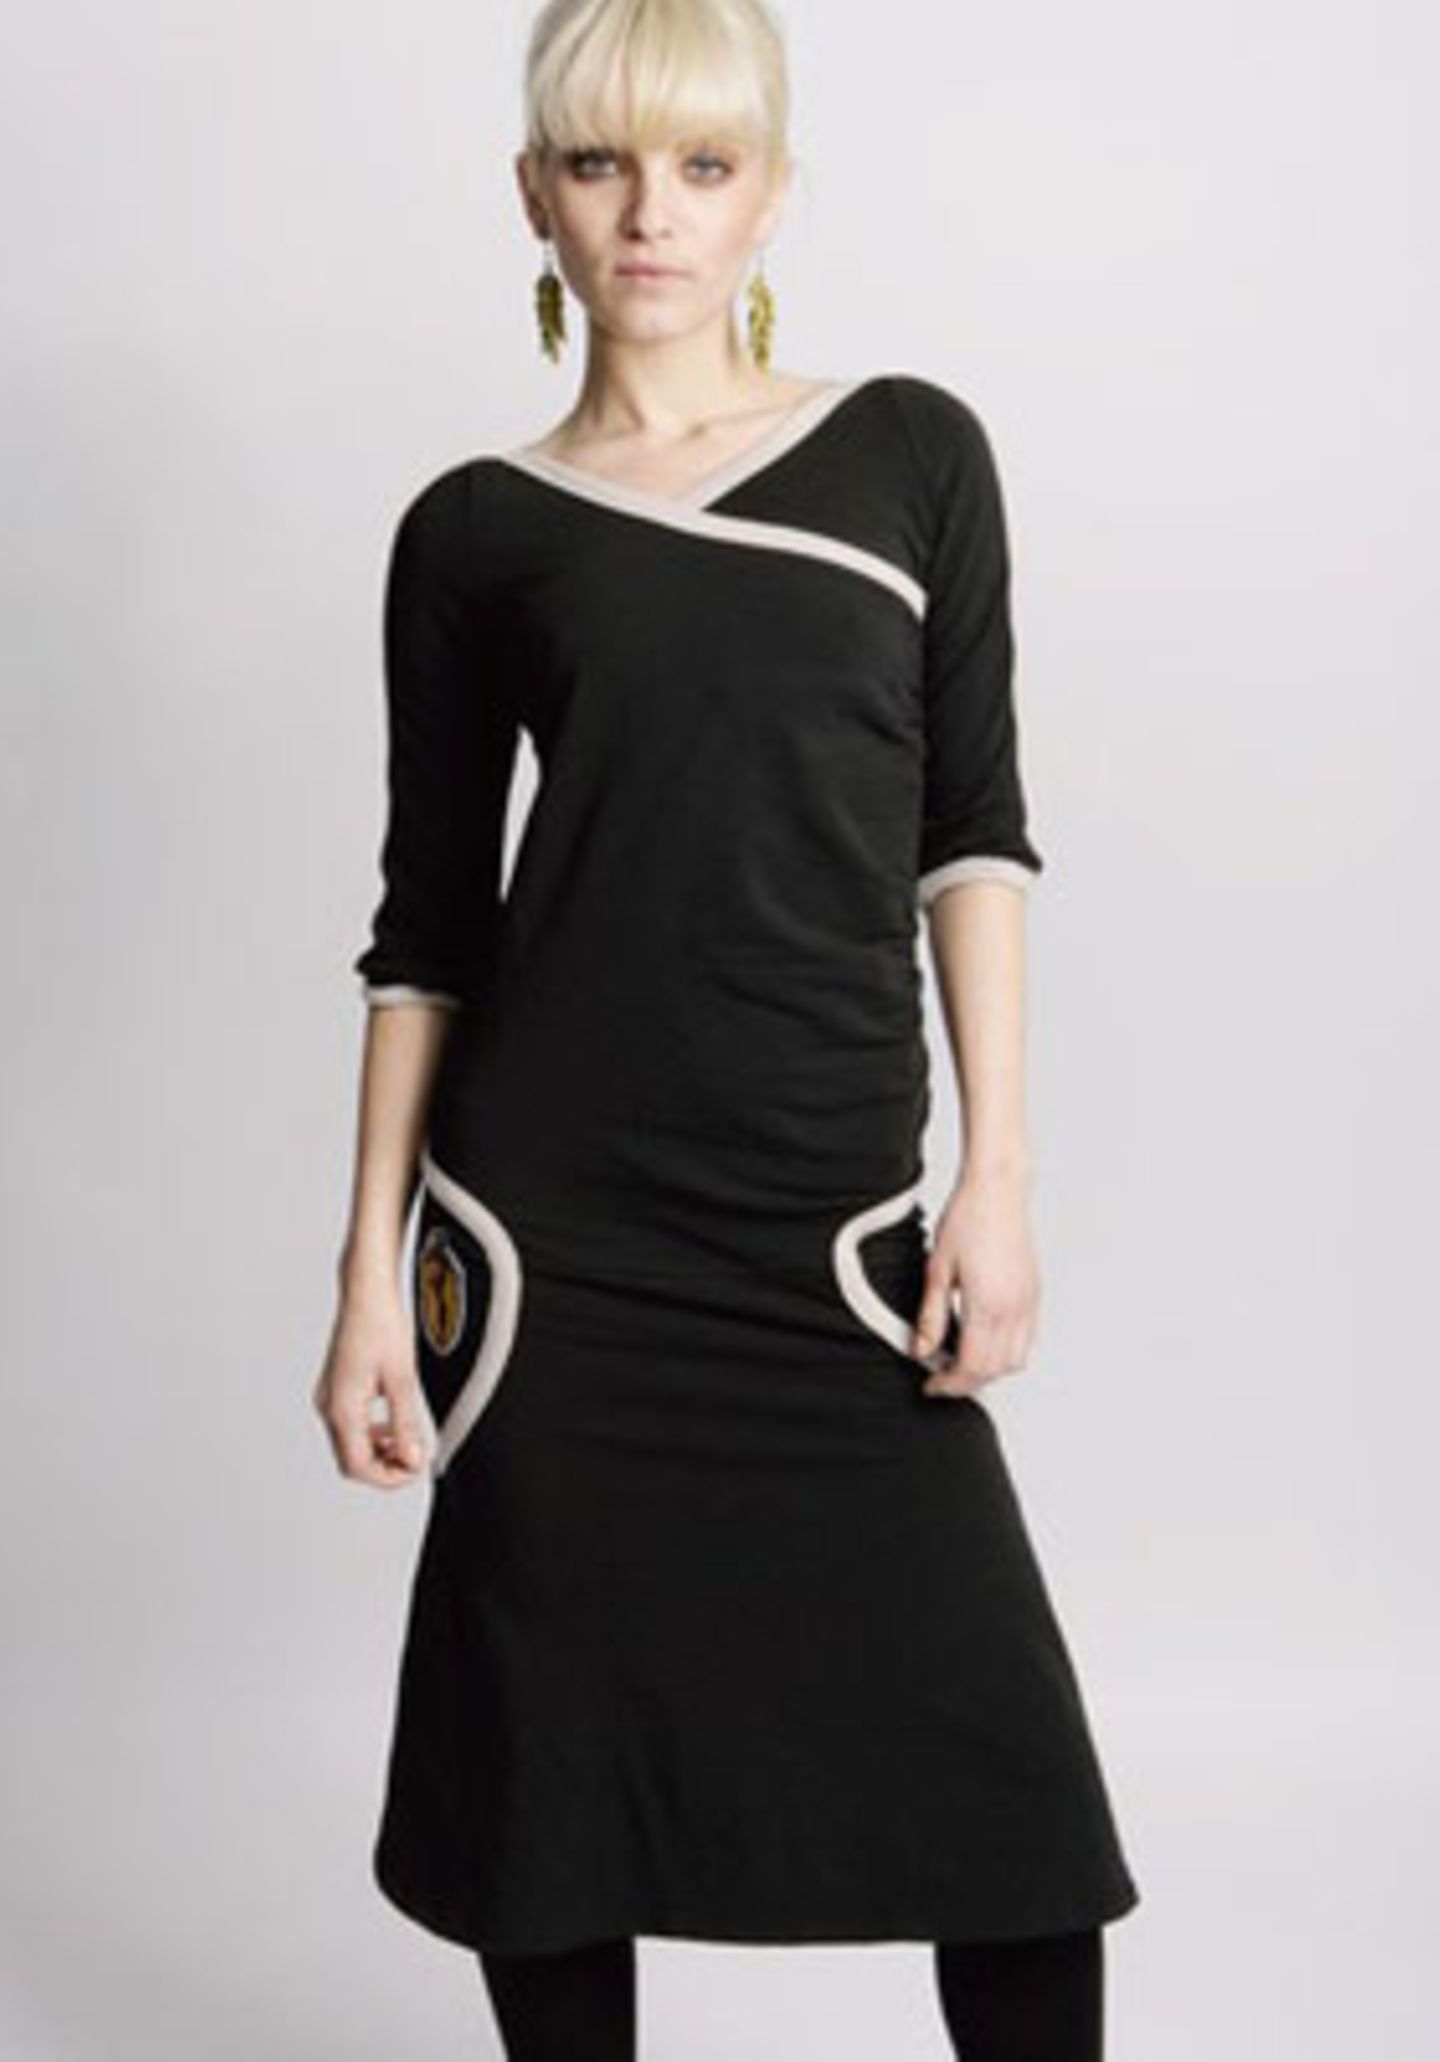 Figurbetontes, länger geschnittenes Kleid; 89,99 Euro; von Blutsschwester über www.frontlineshop.com